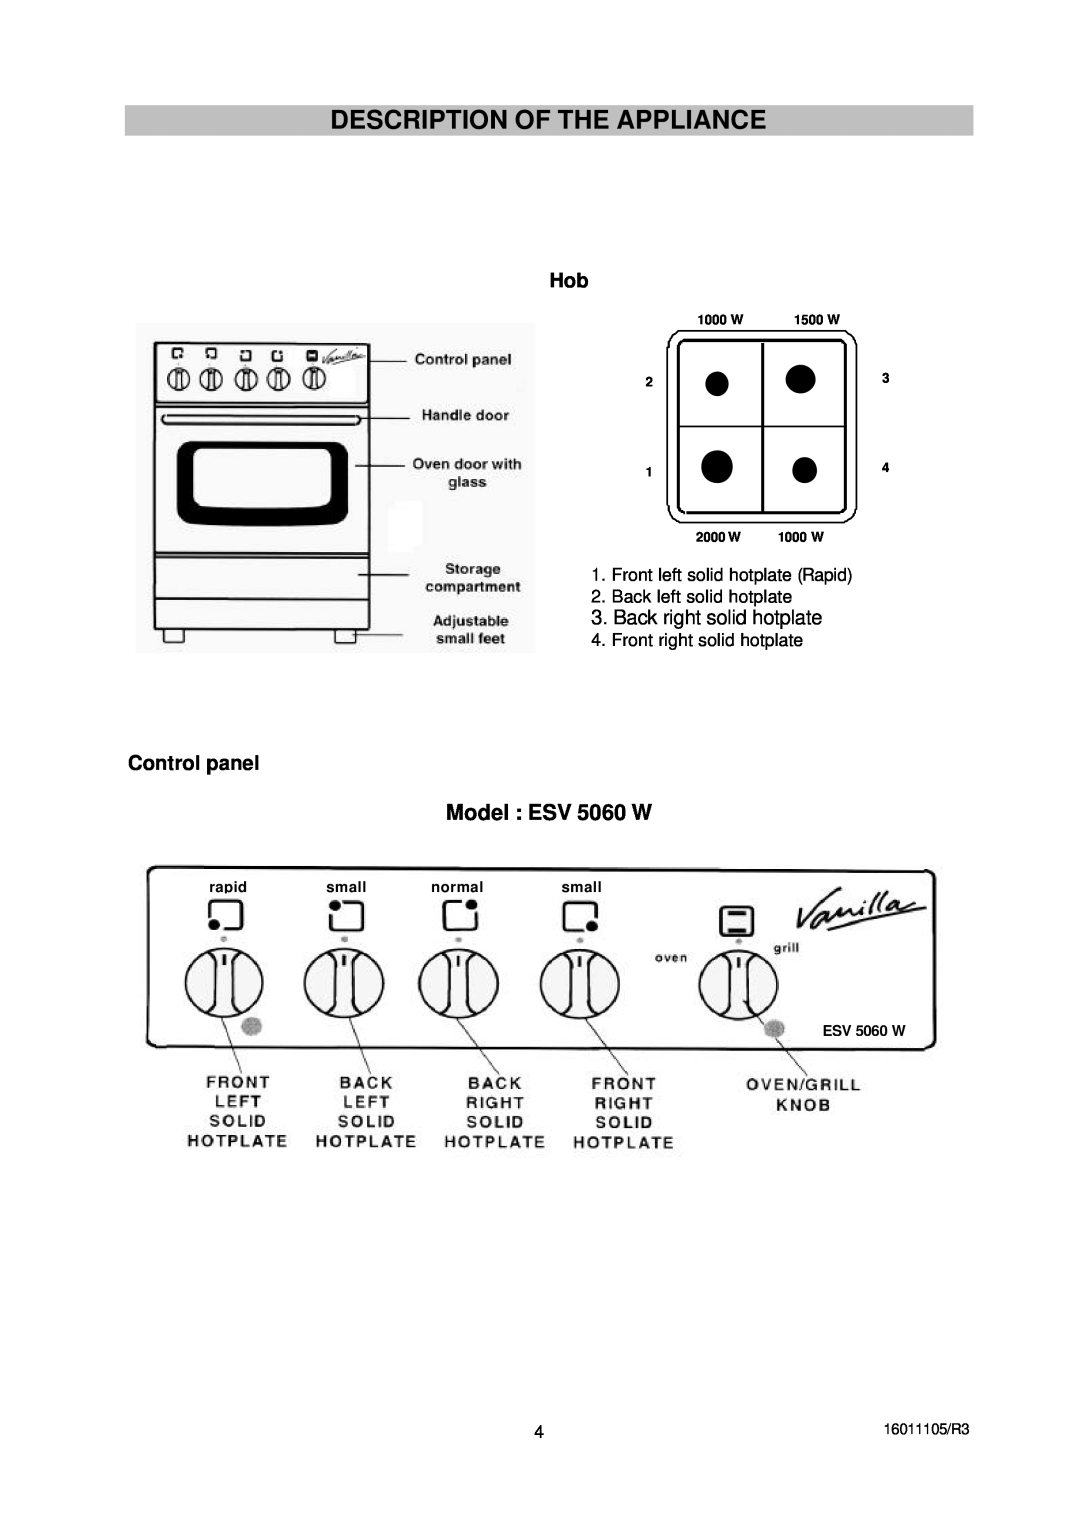 Moffat ESV5060W Description Of The Appliance, Model ESV 5060 W, Back right solid hotplate, rapid, small, normal, 1000 W 